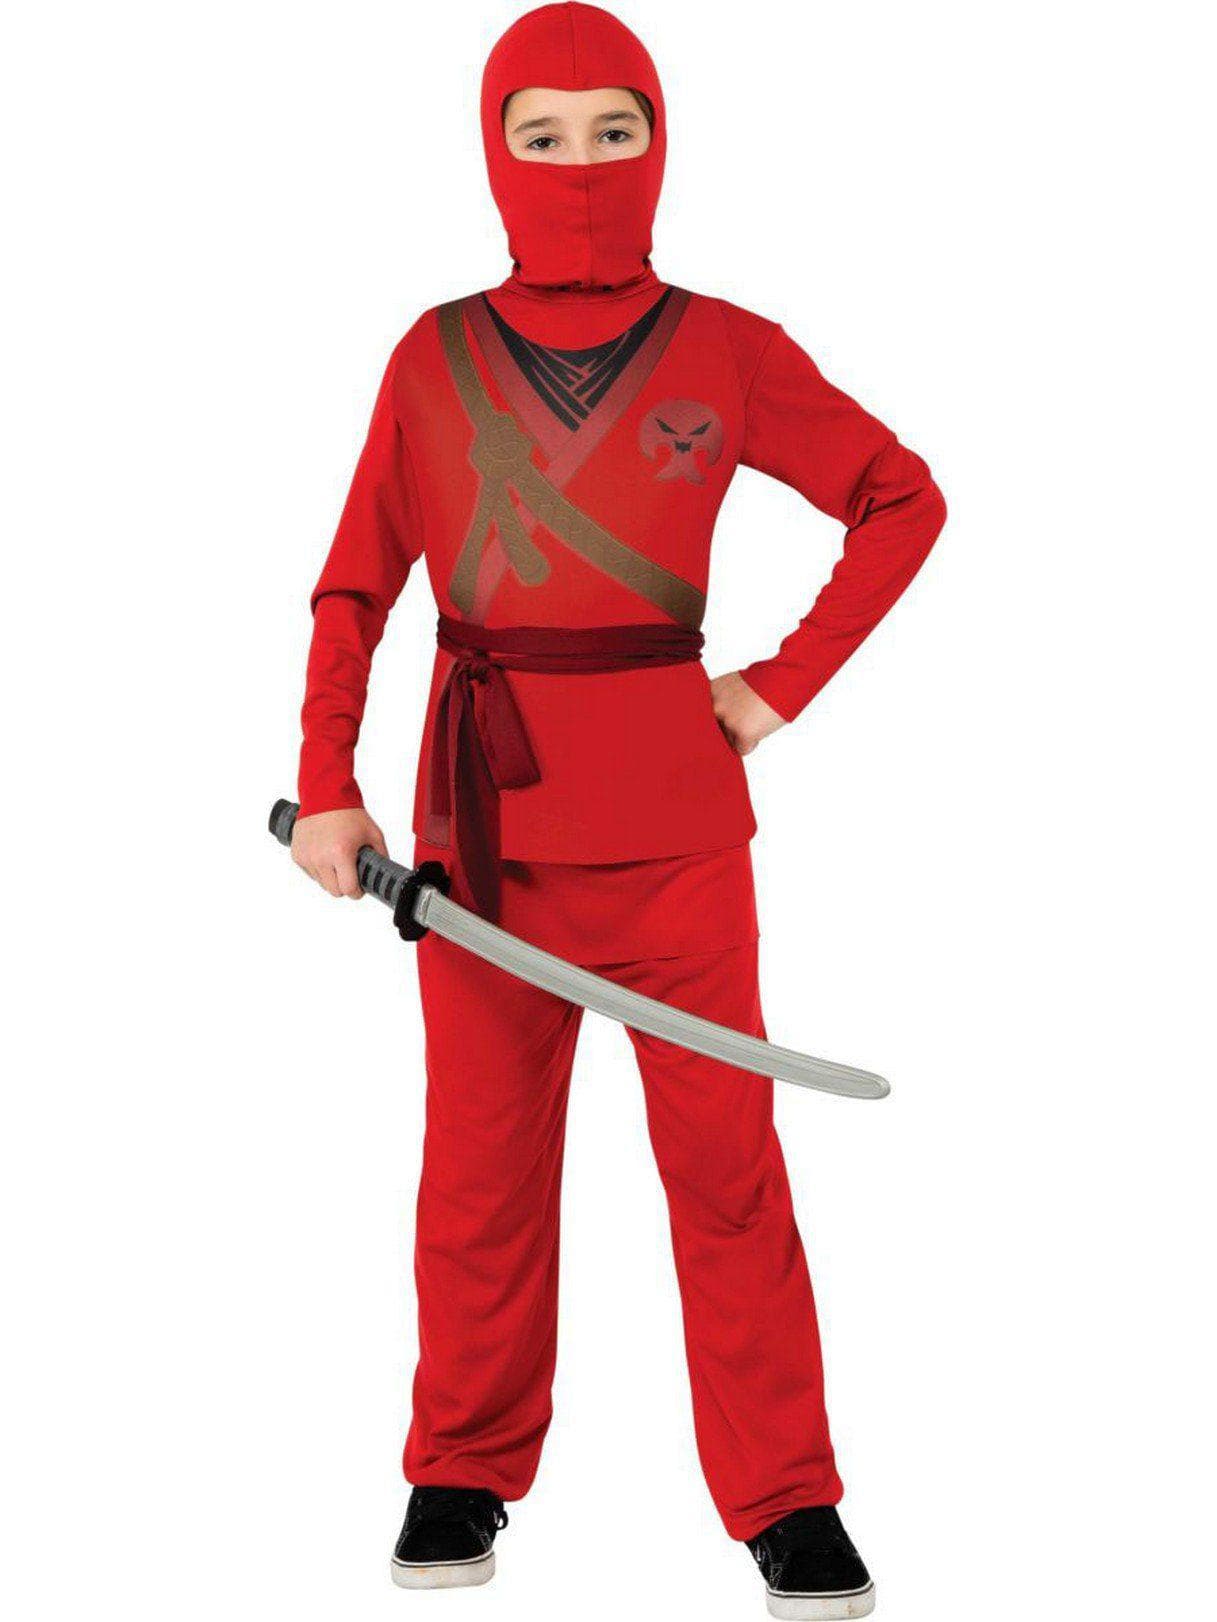 Kids' Red Ninja Costume - costumes.com